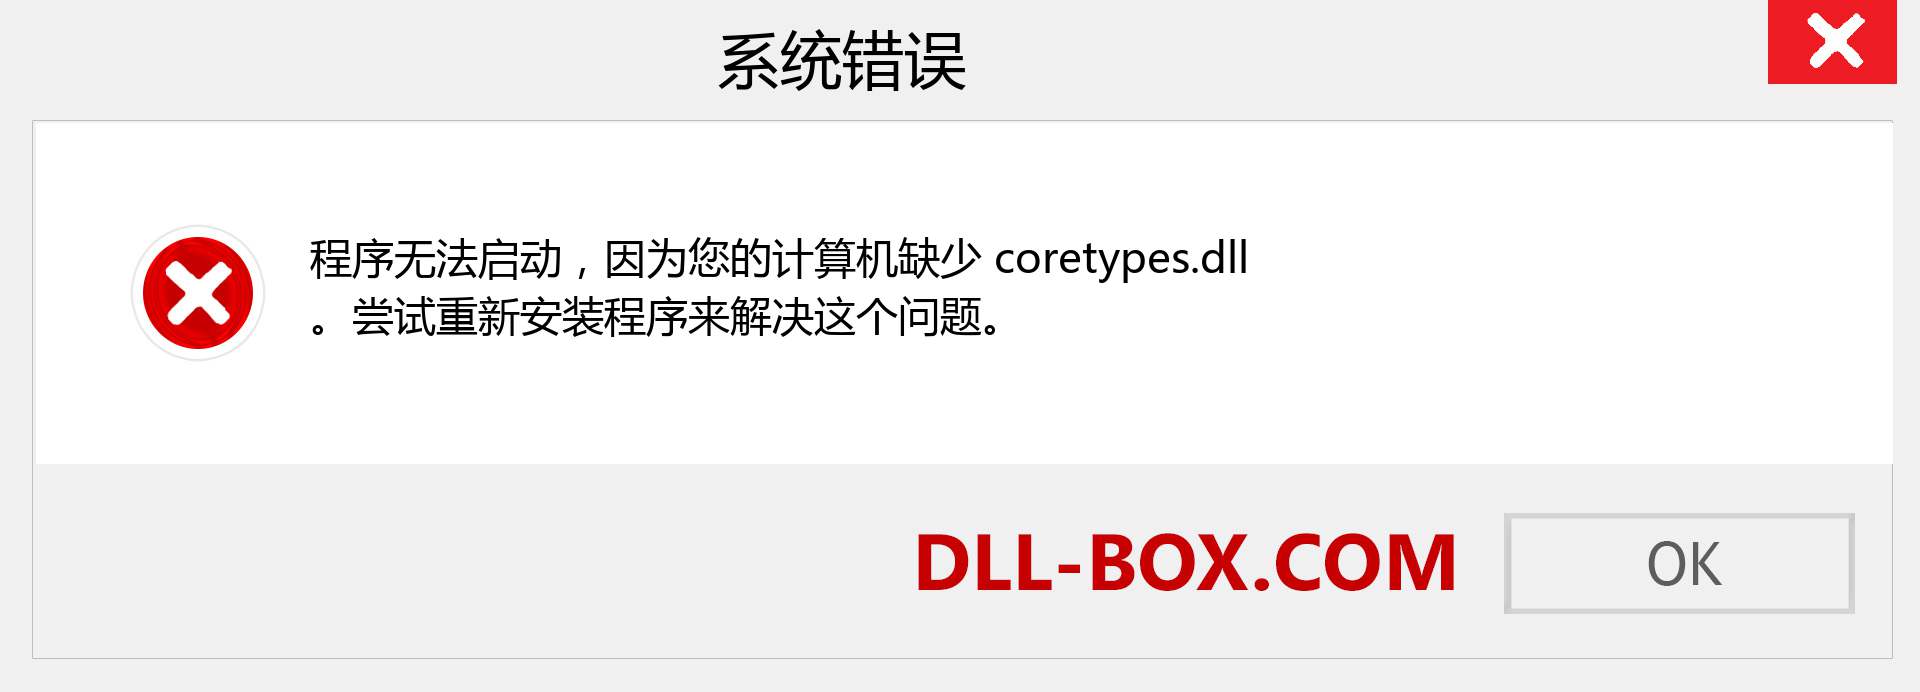 coretypes.dll 文件丢失？。 适用于 Windows 7、8、10 的下载 - 修复 Windows、照片、图像上的 coretypes dll 丢失错误